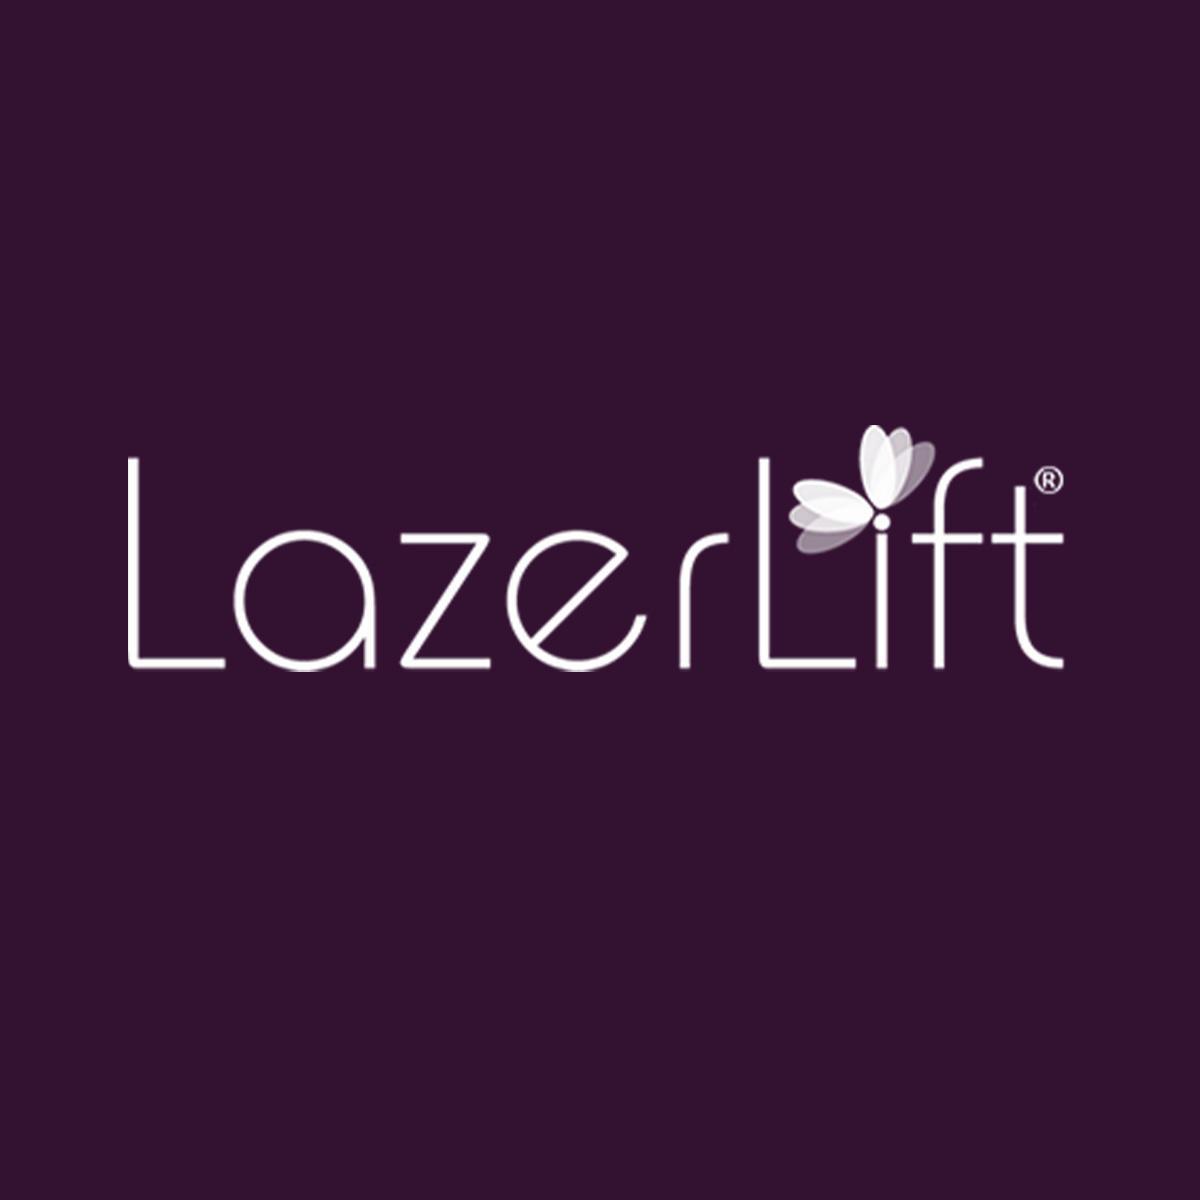 LazerLift Orlando - Orlando, FL 32828 - (407)972-0743 | ShowMeLocal.com